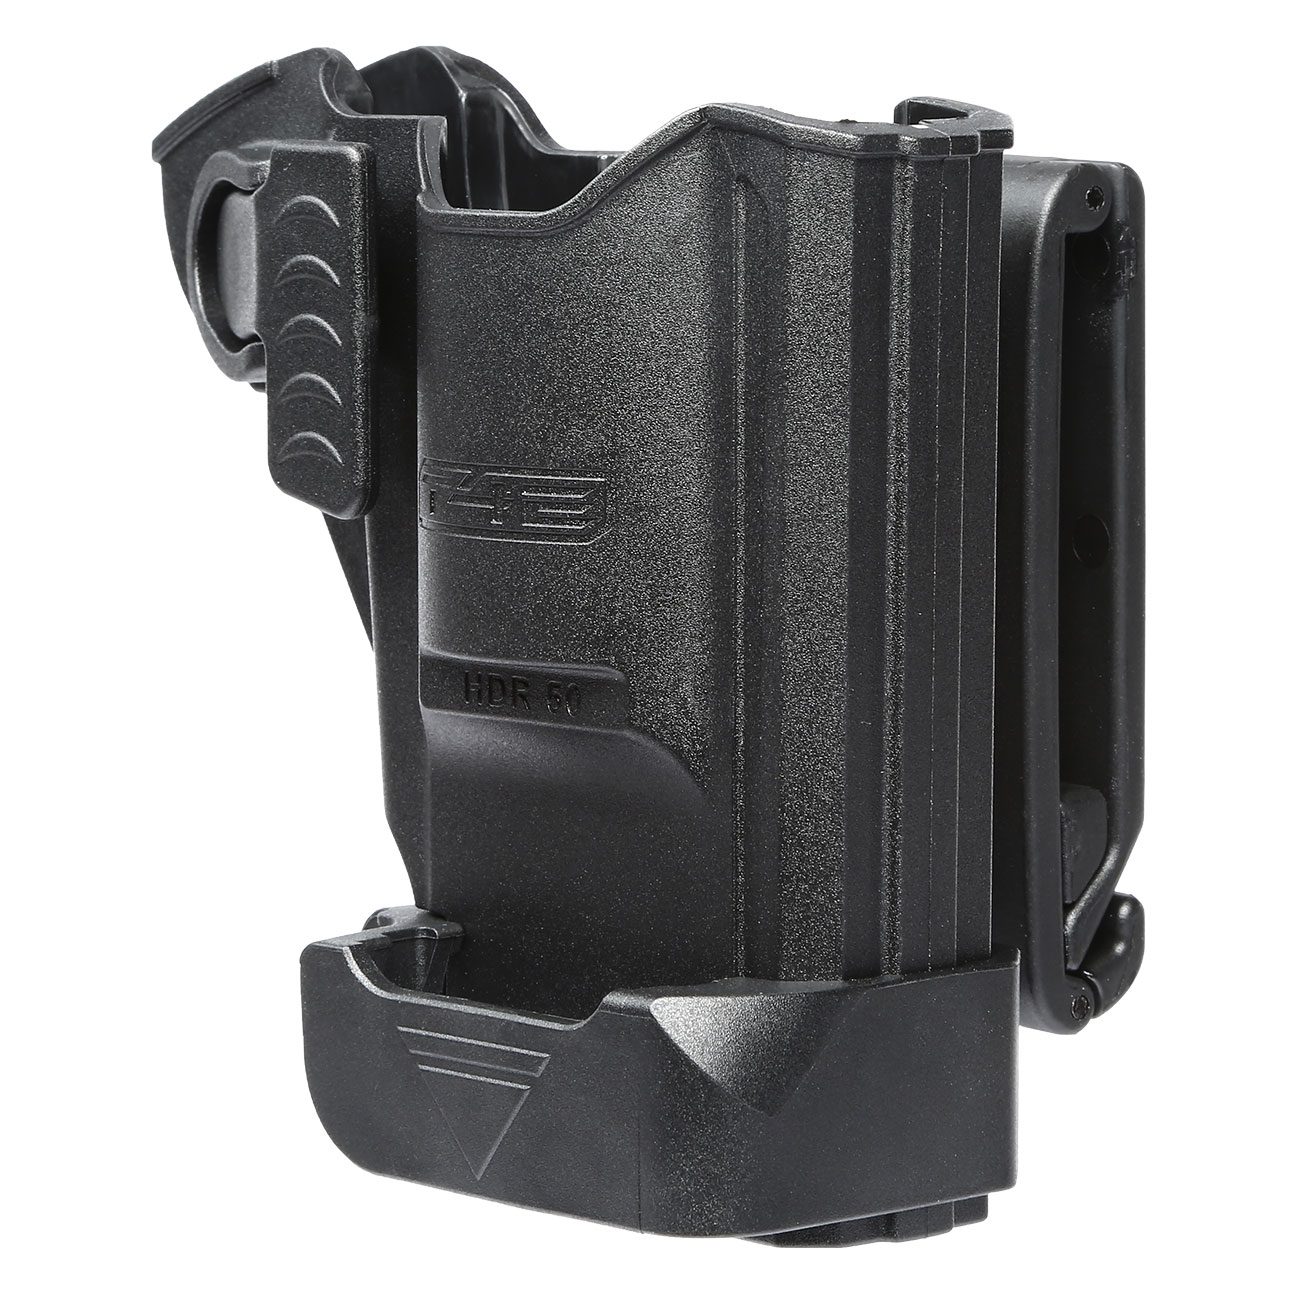 Schnellzieh-Holster Polymer für T4E HDR 50 CO2 RAM Revolver Kal. .50 schwarz Bild 1